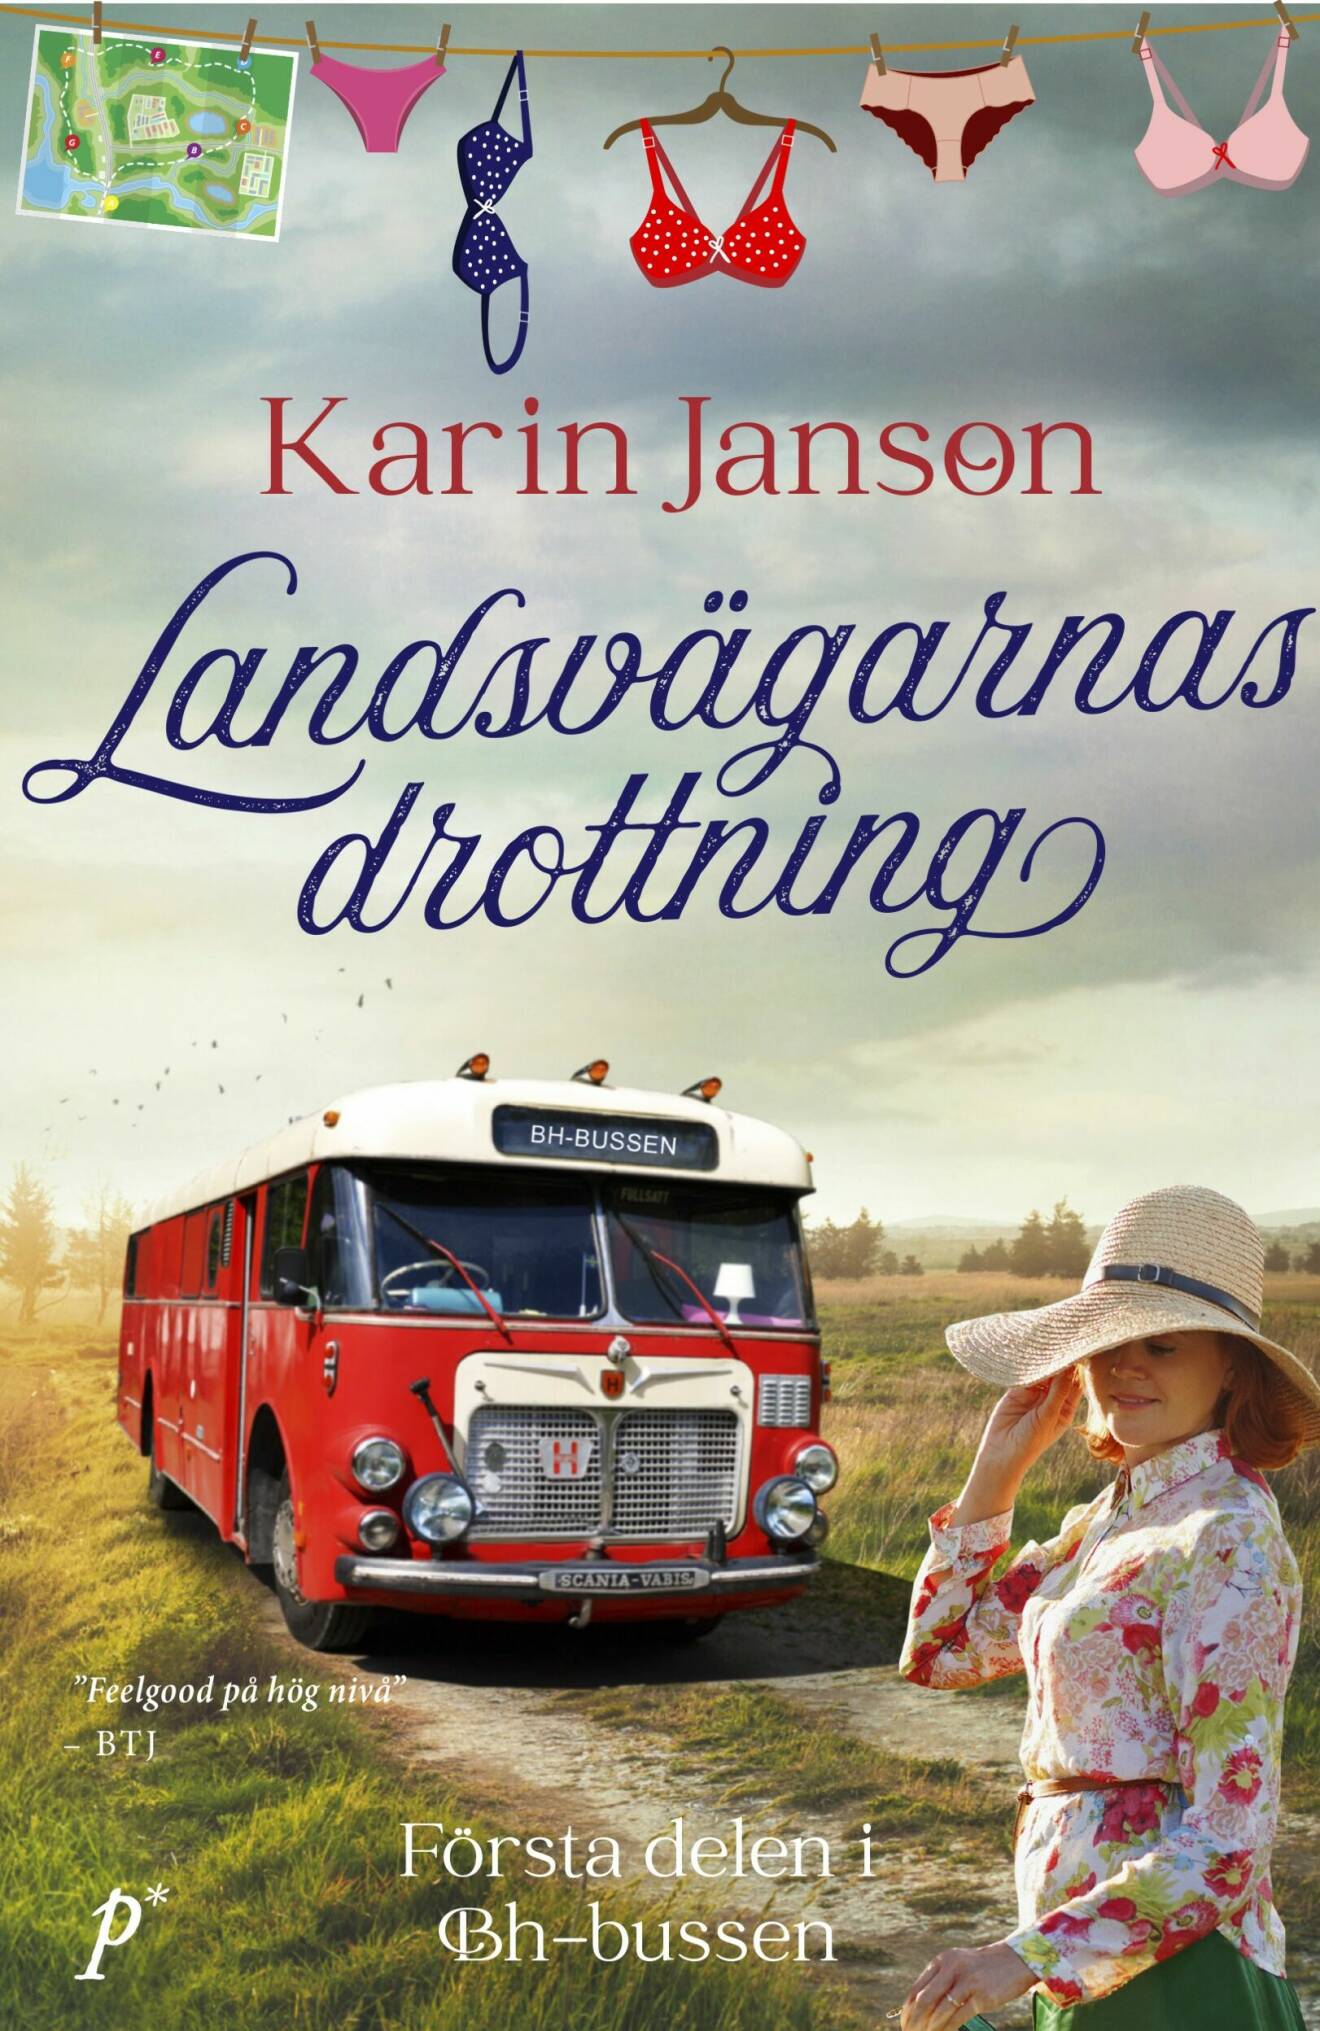 Bokomslag Landsvägarnas drottning av Karin Janson.